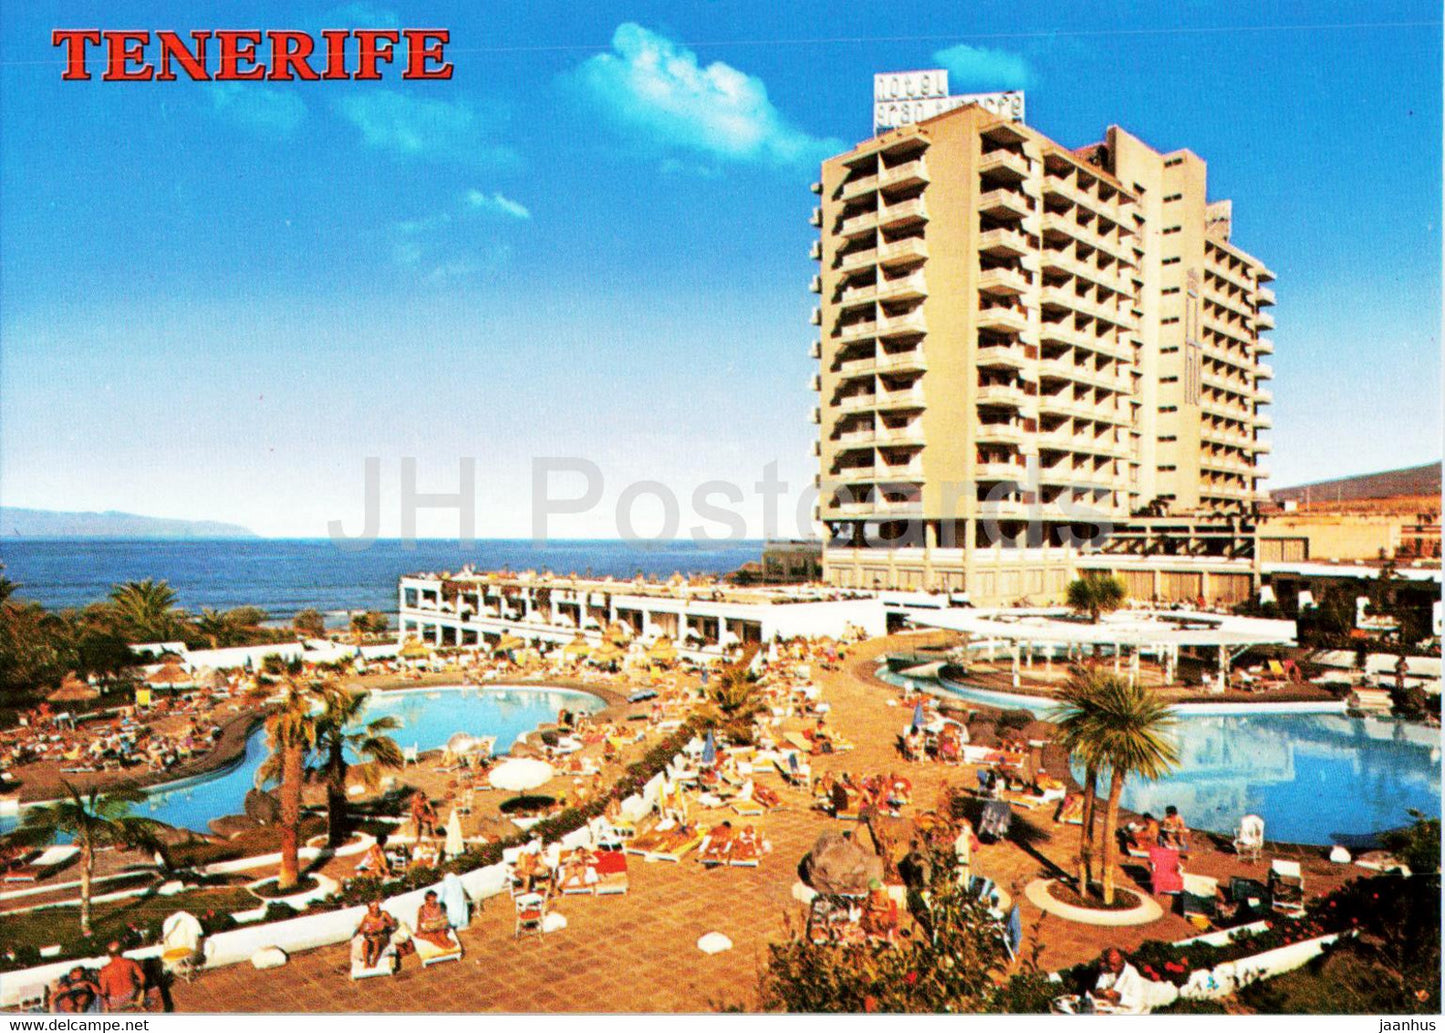 Playa de las Americas - beach - hotel - Tenerife - 4161 - Spain - unused - JH Postcards